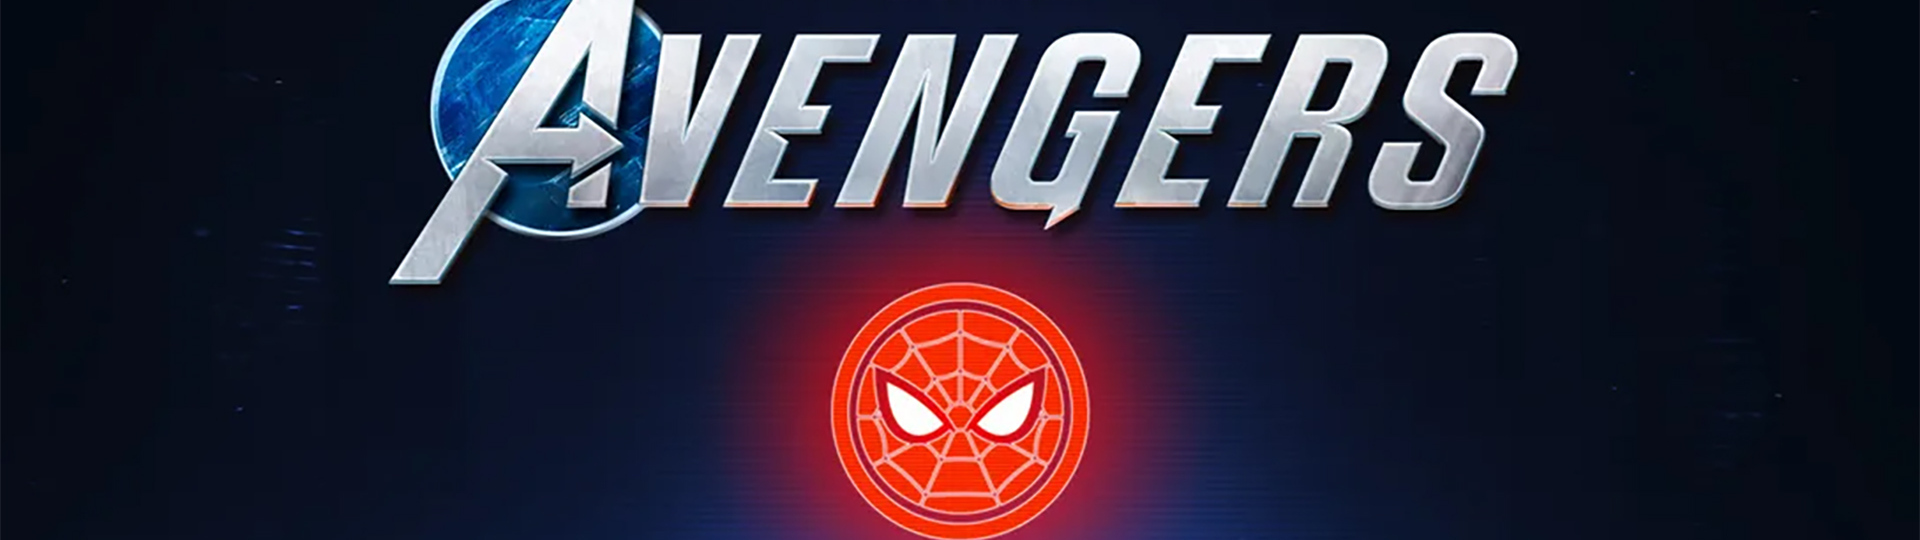 Potvrzeno: Spider-Man exkluzivní postavou Marvel’s Avengers na PlayStation | Novinky